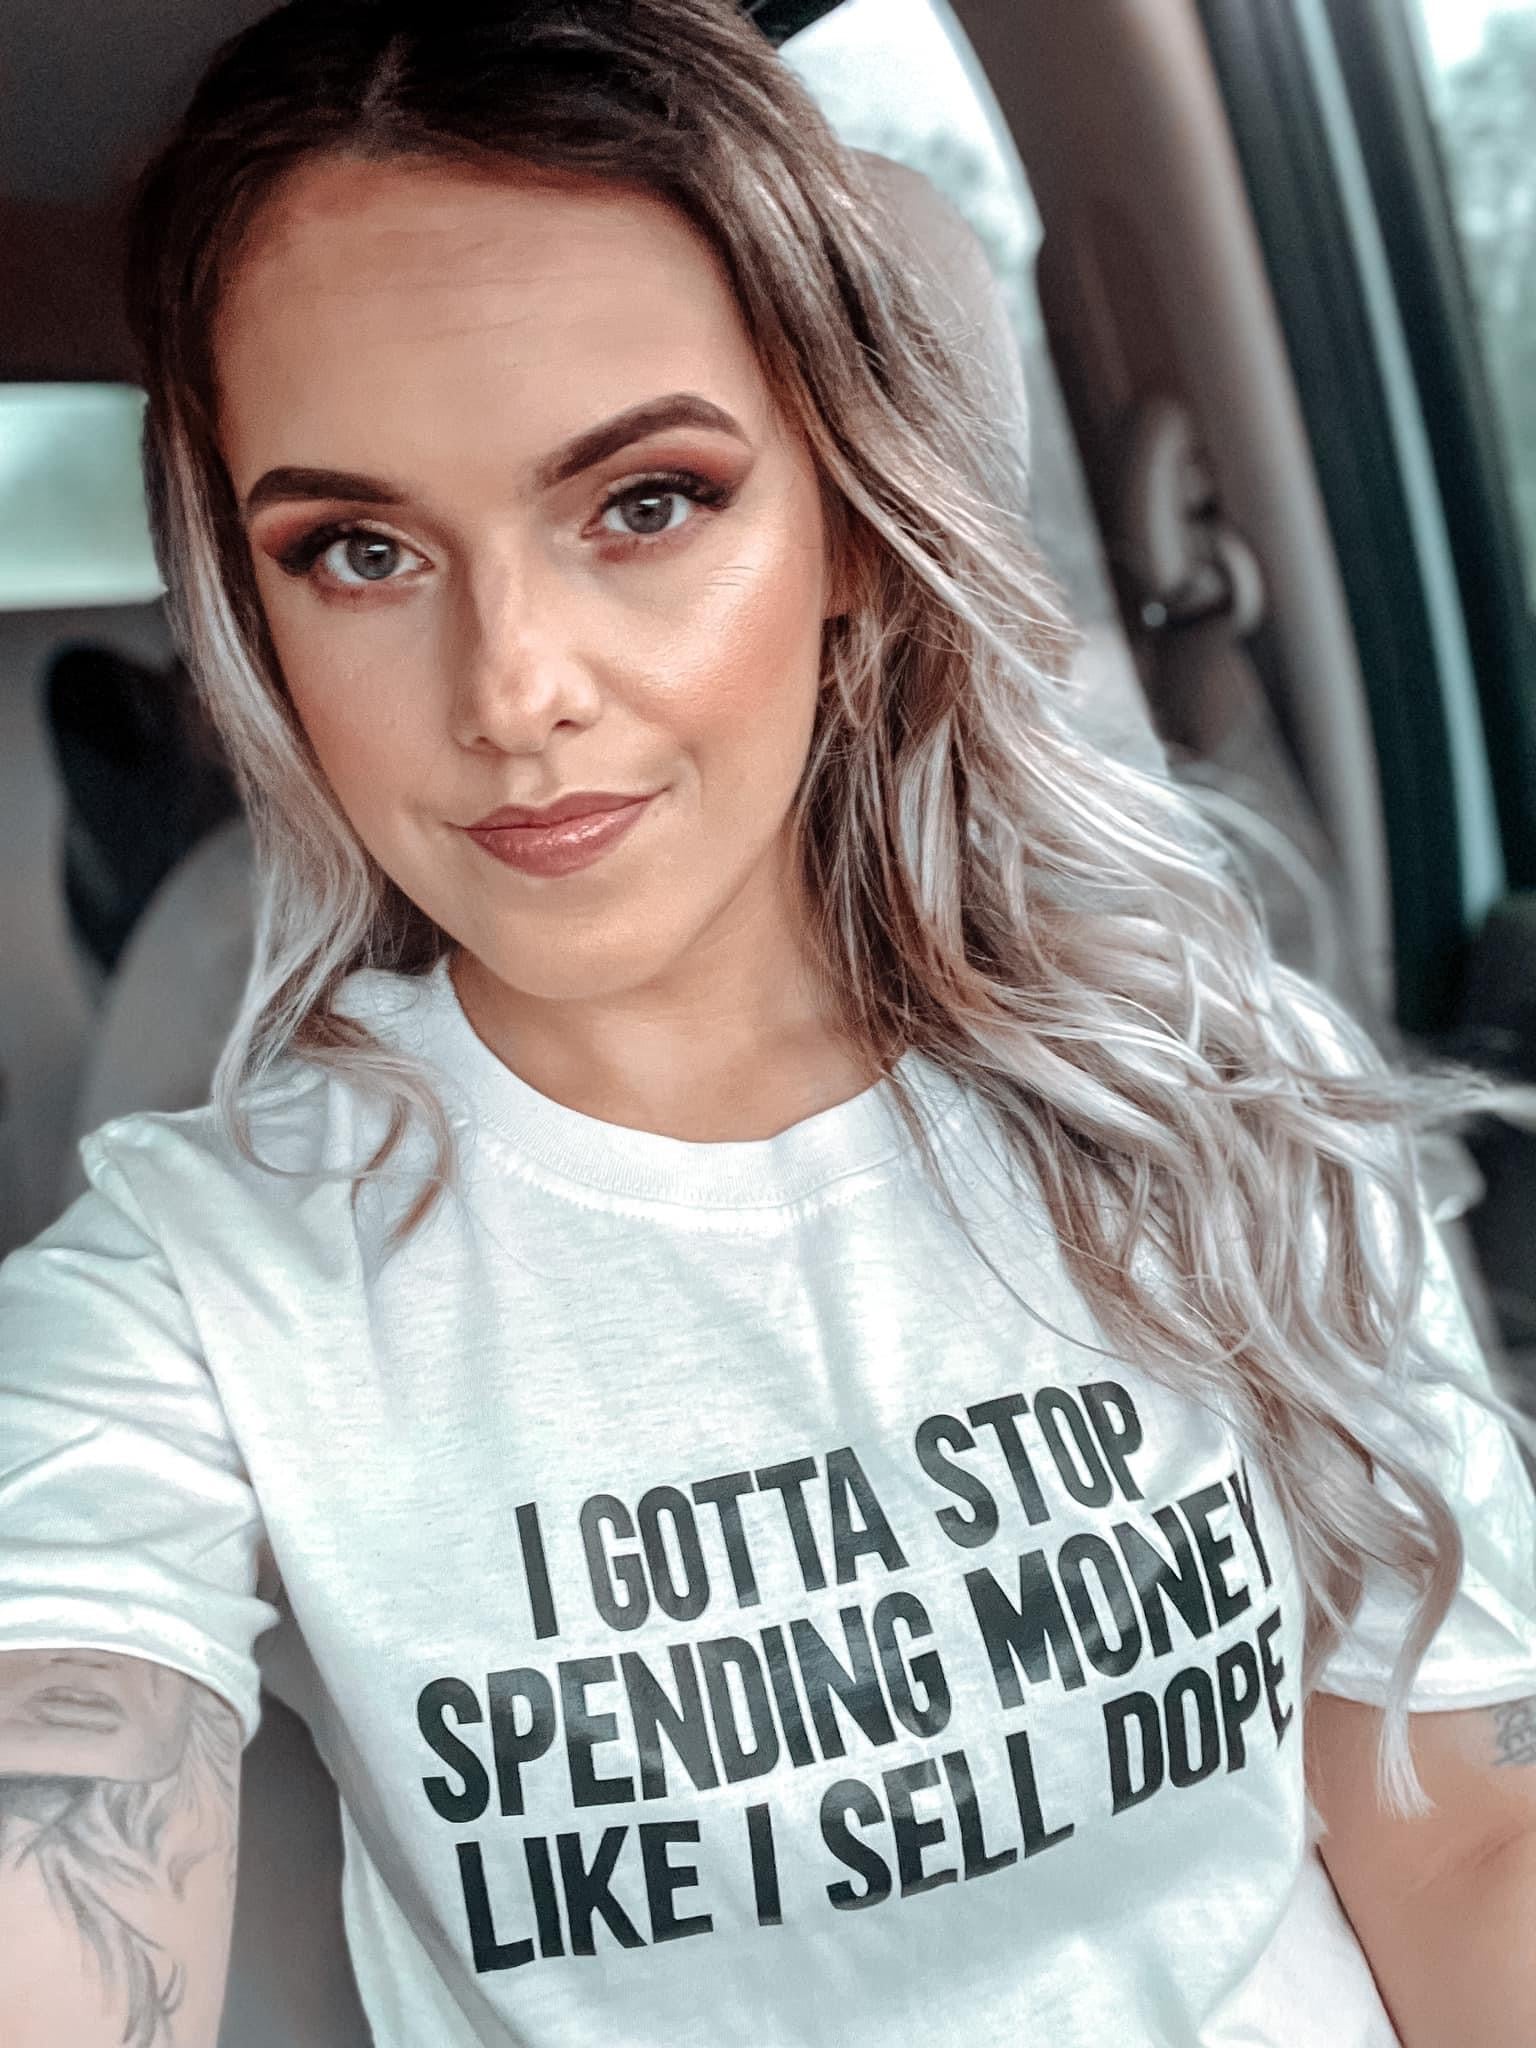 Stop spending money